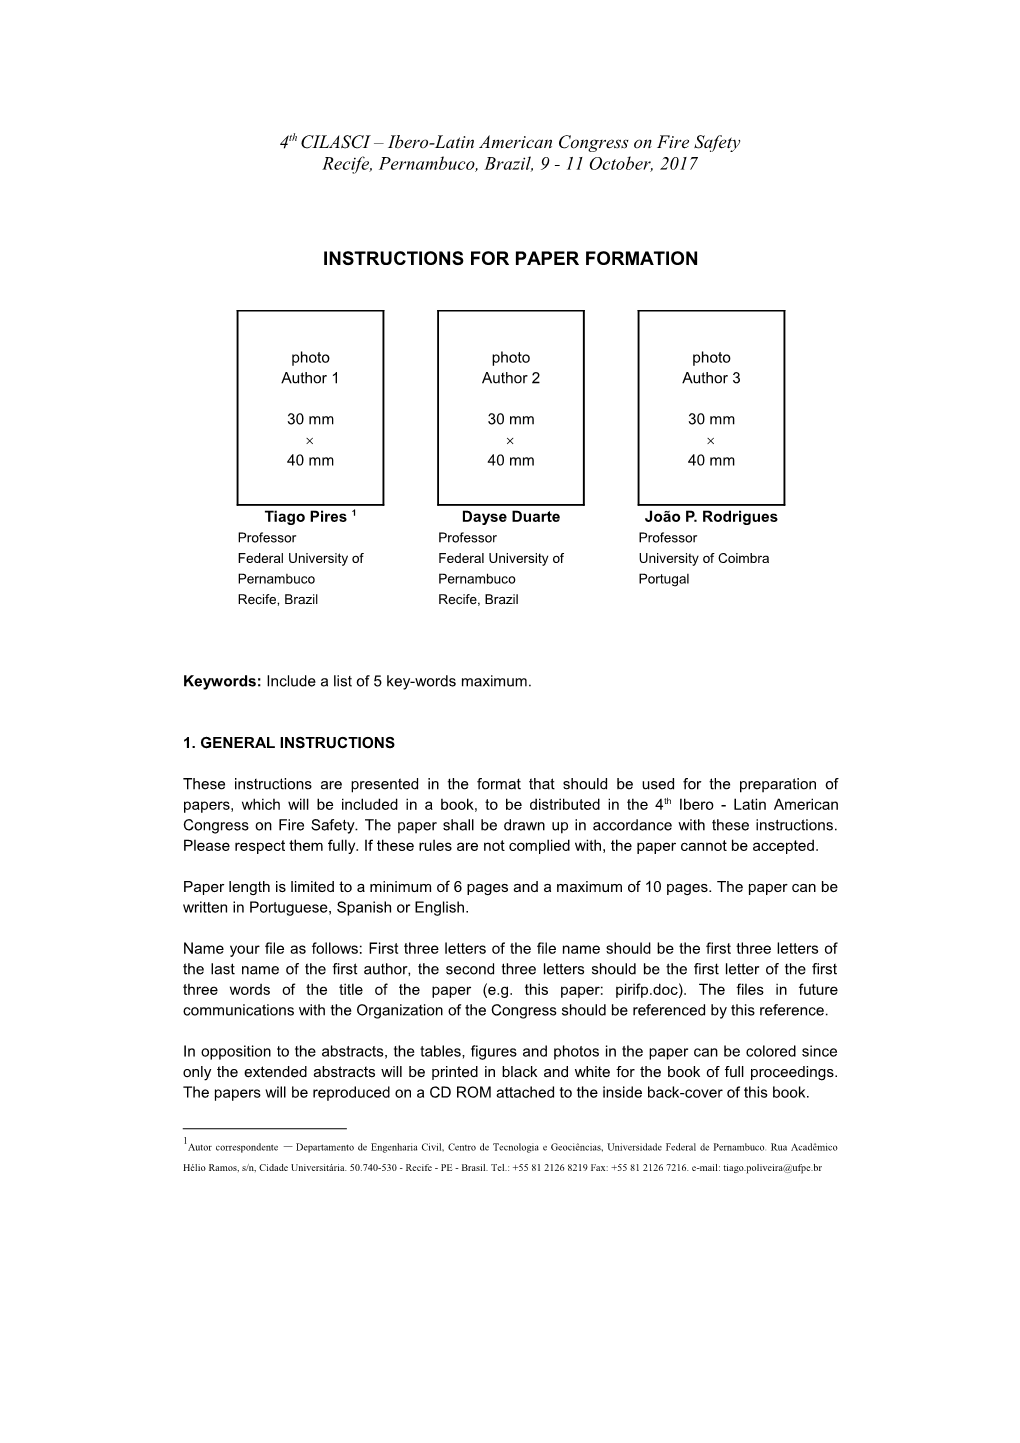 Jpee2006 - Instruções Para Formatação Dos Textos